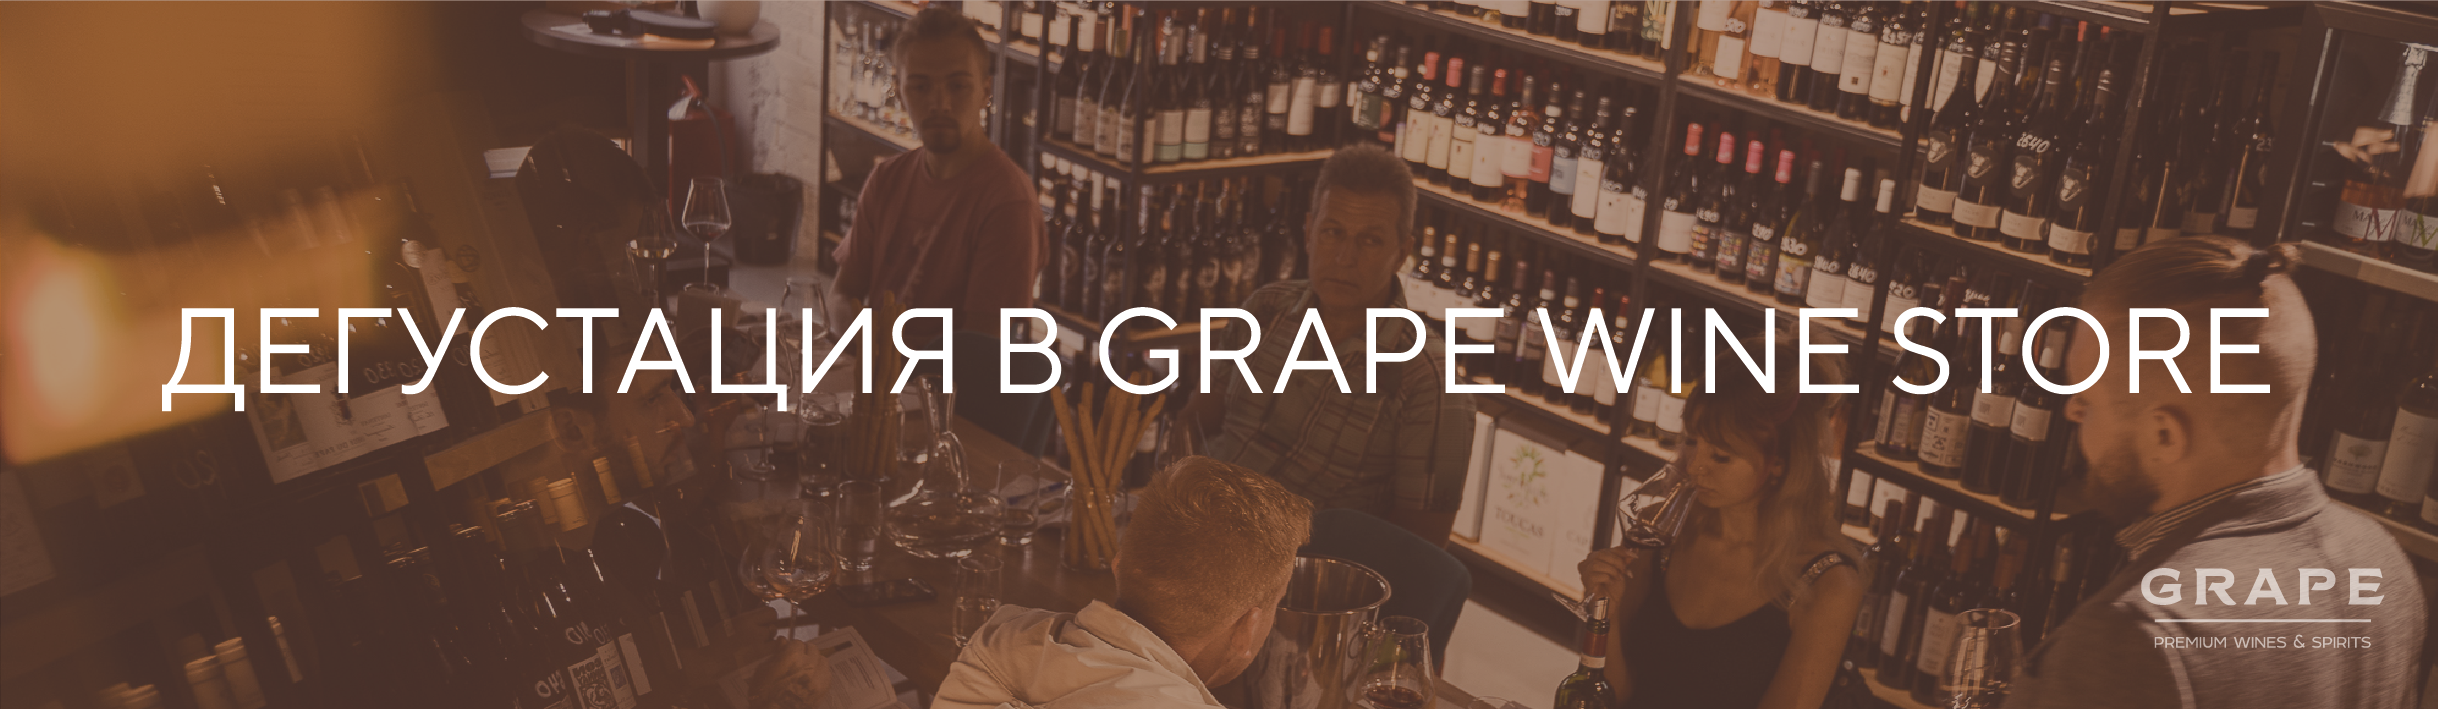 Клиентская дегустация в винотеке Grape Wine Store / 11 августа